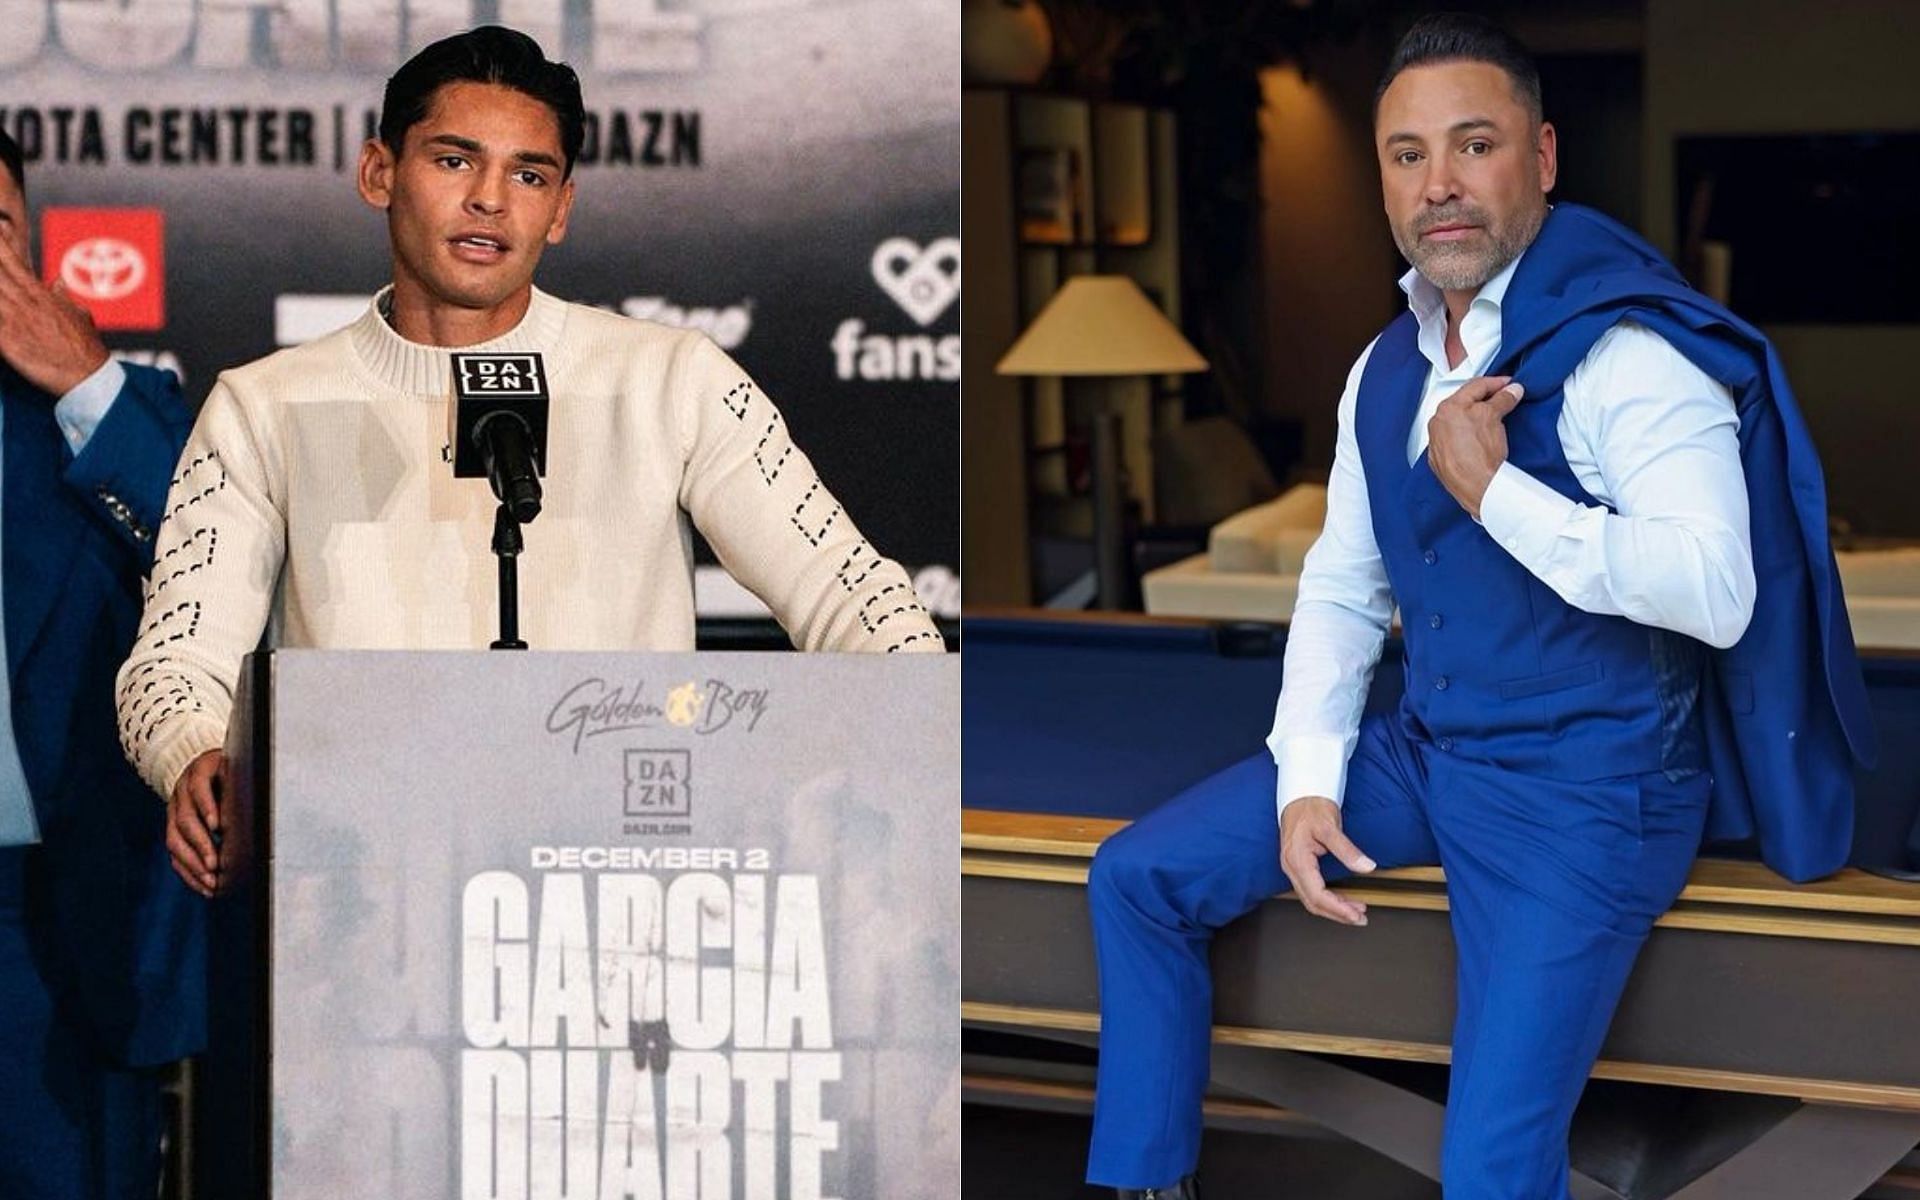 Ryan Garcia (left) Oscar De La Hoya (right) [Image courtesy @kingryan @oscardelahoya on Instagram]